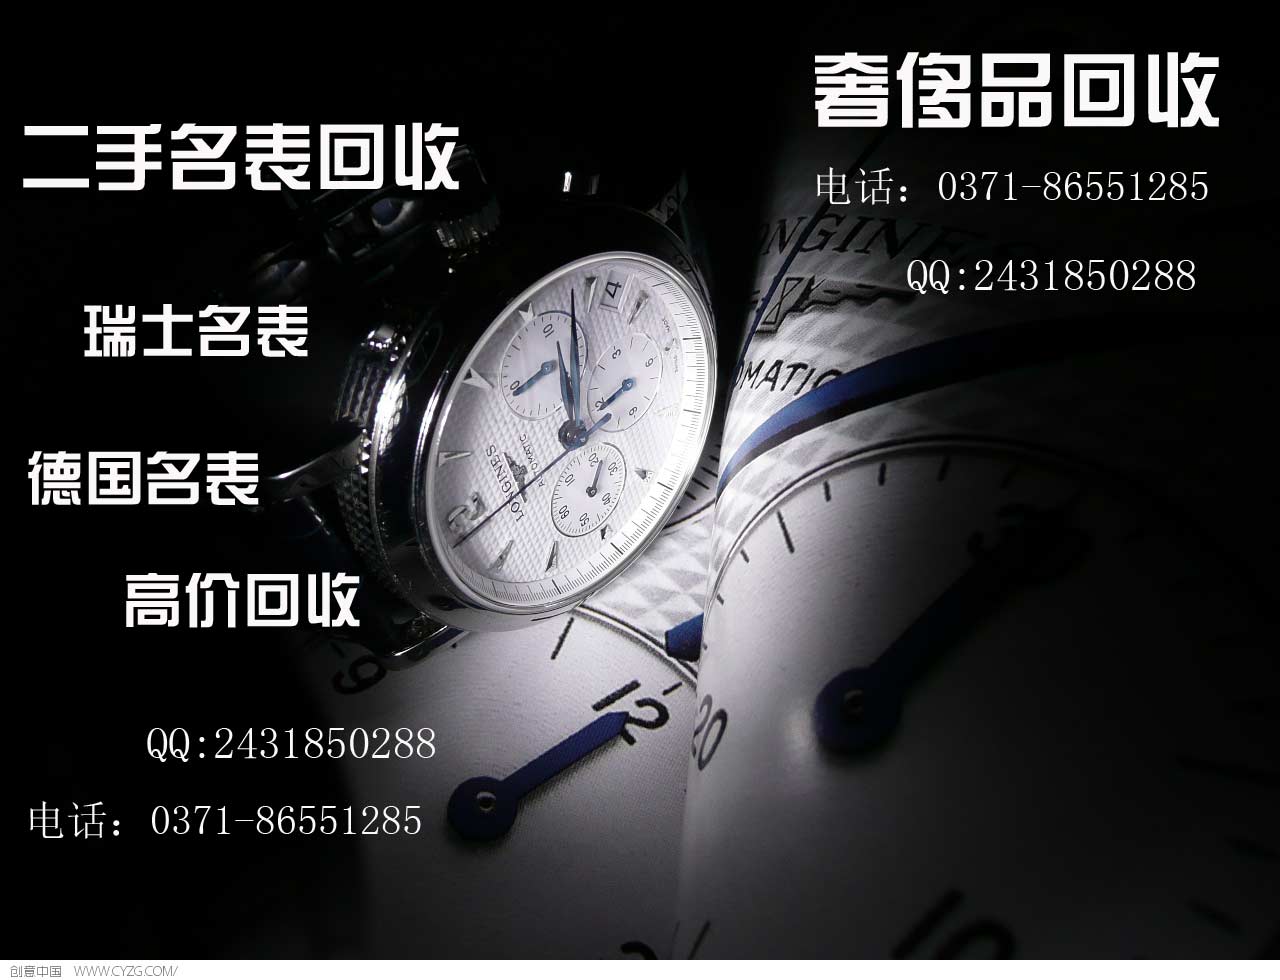 供应梅花表回收 郑州二手手表回收店 二手浪琴